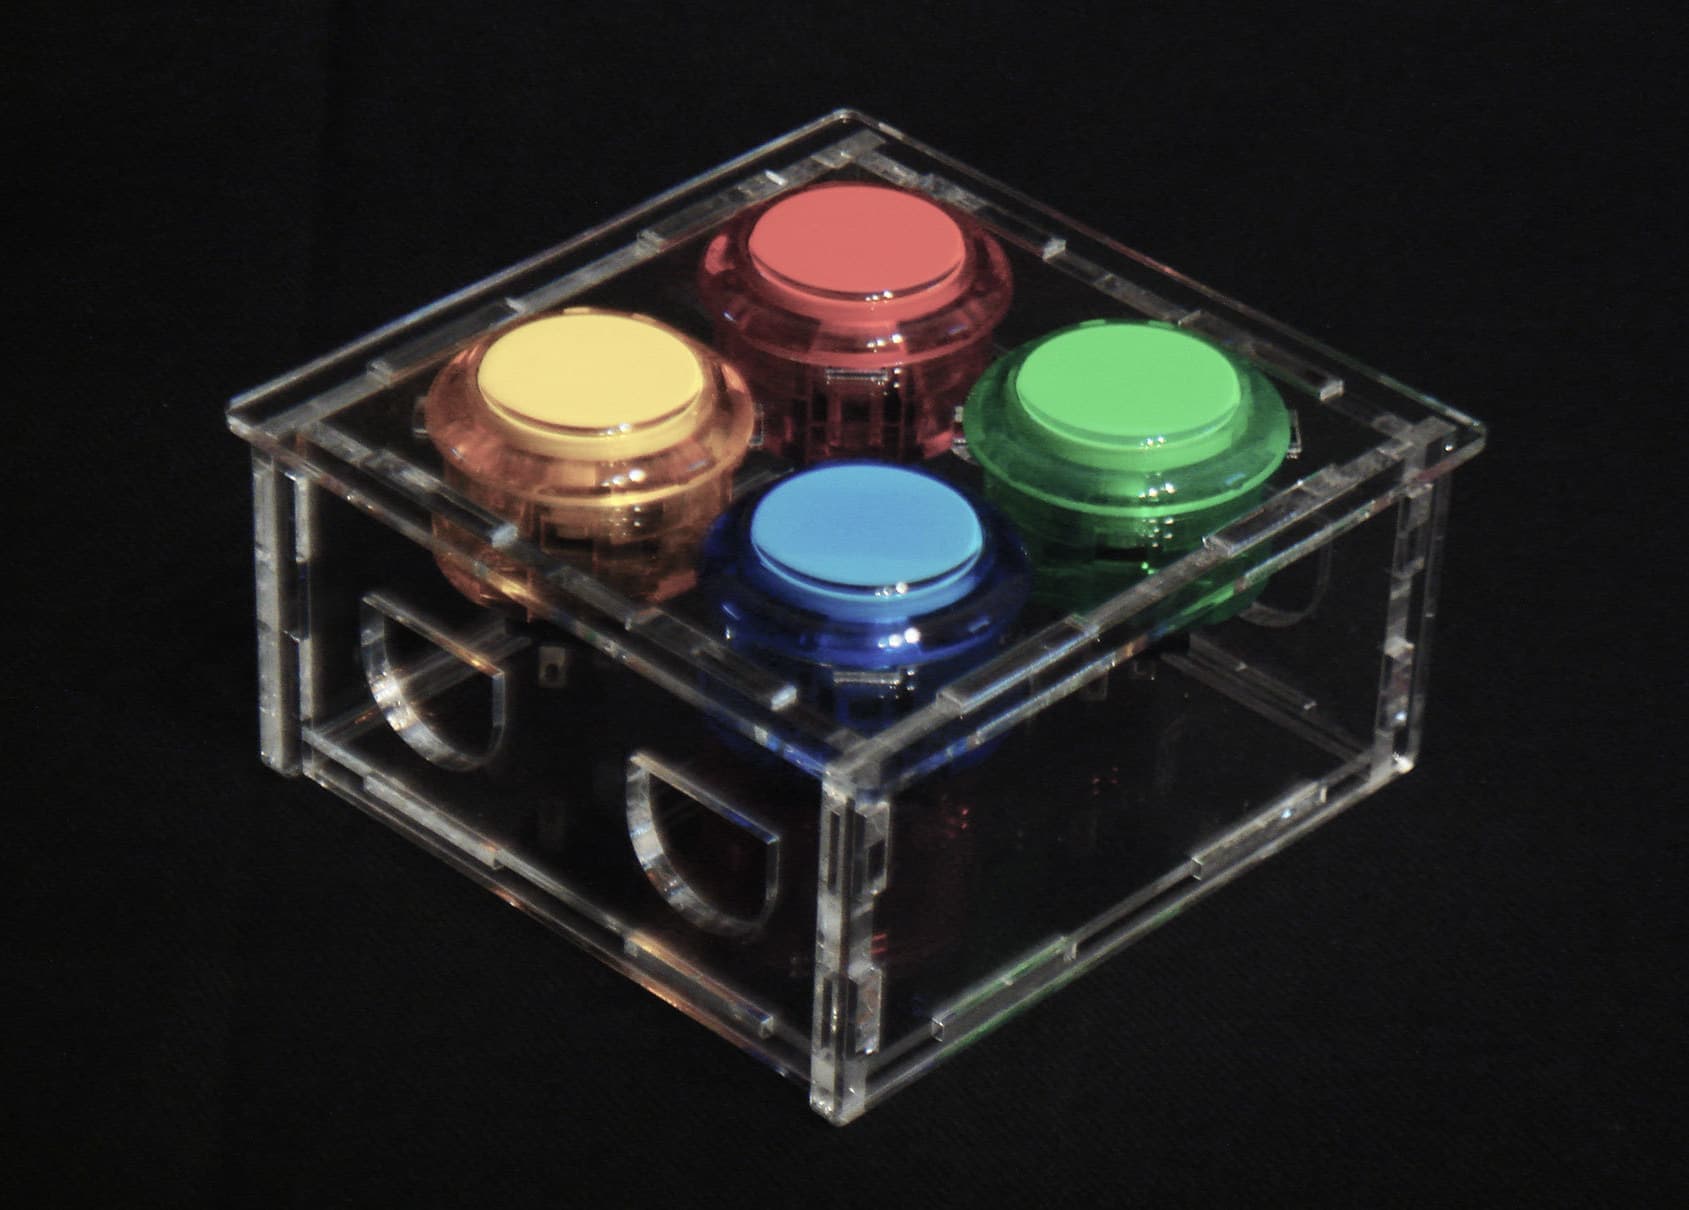 30φ size dedicated button case(4 pieces type)